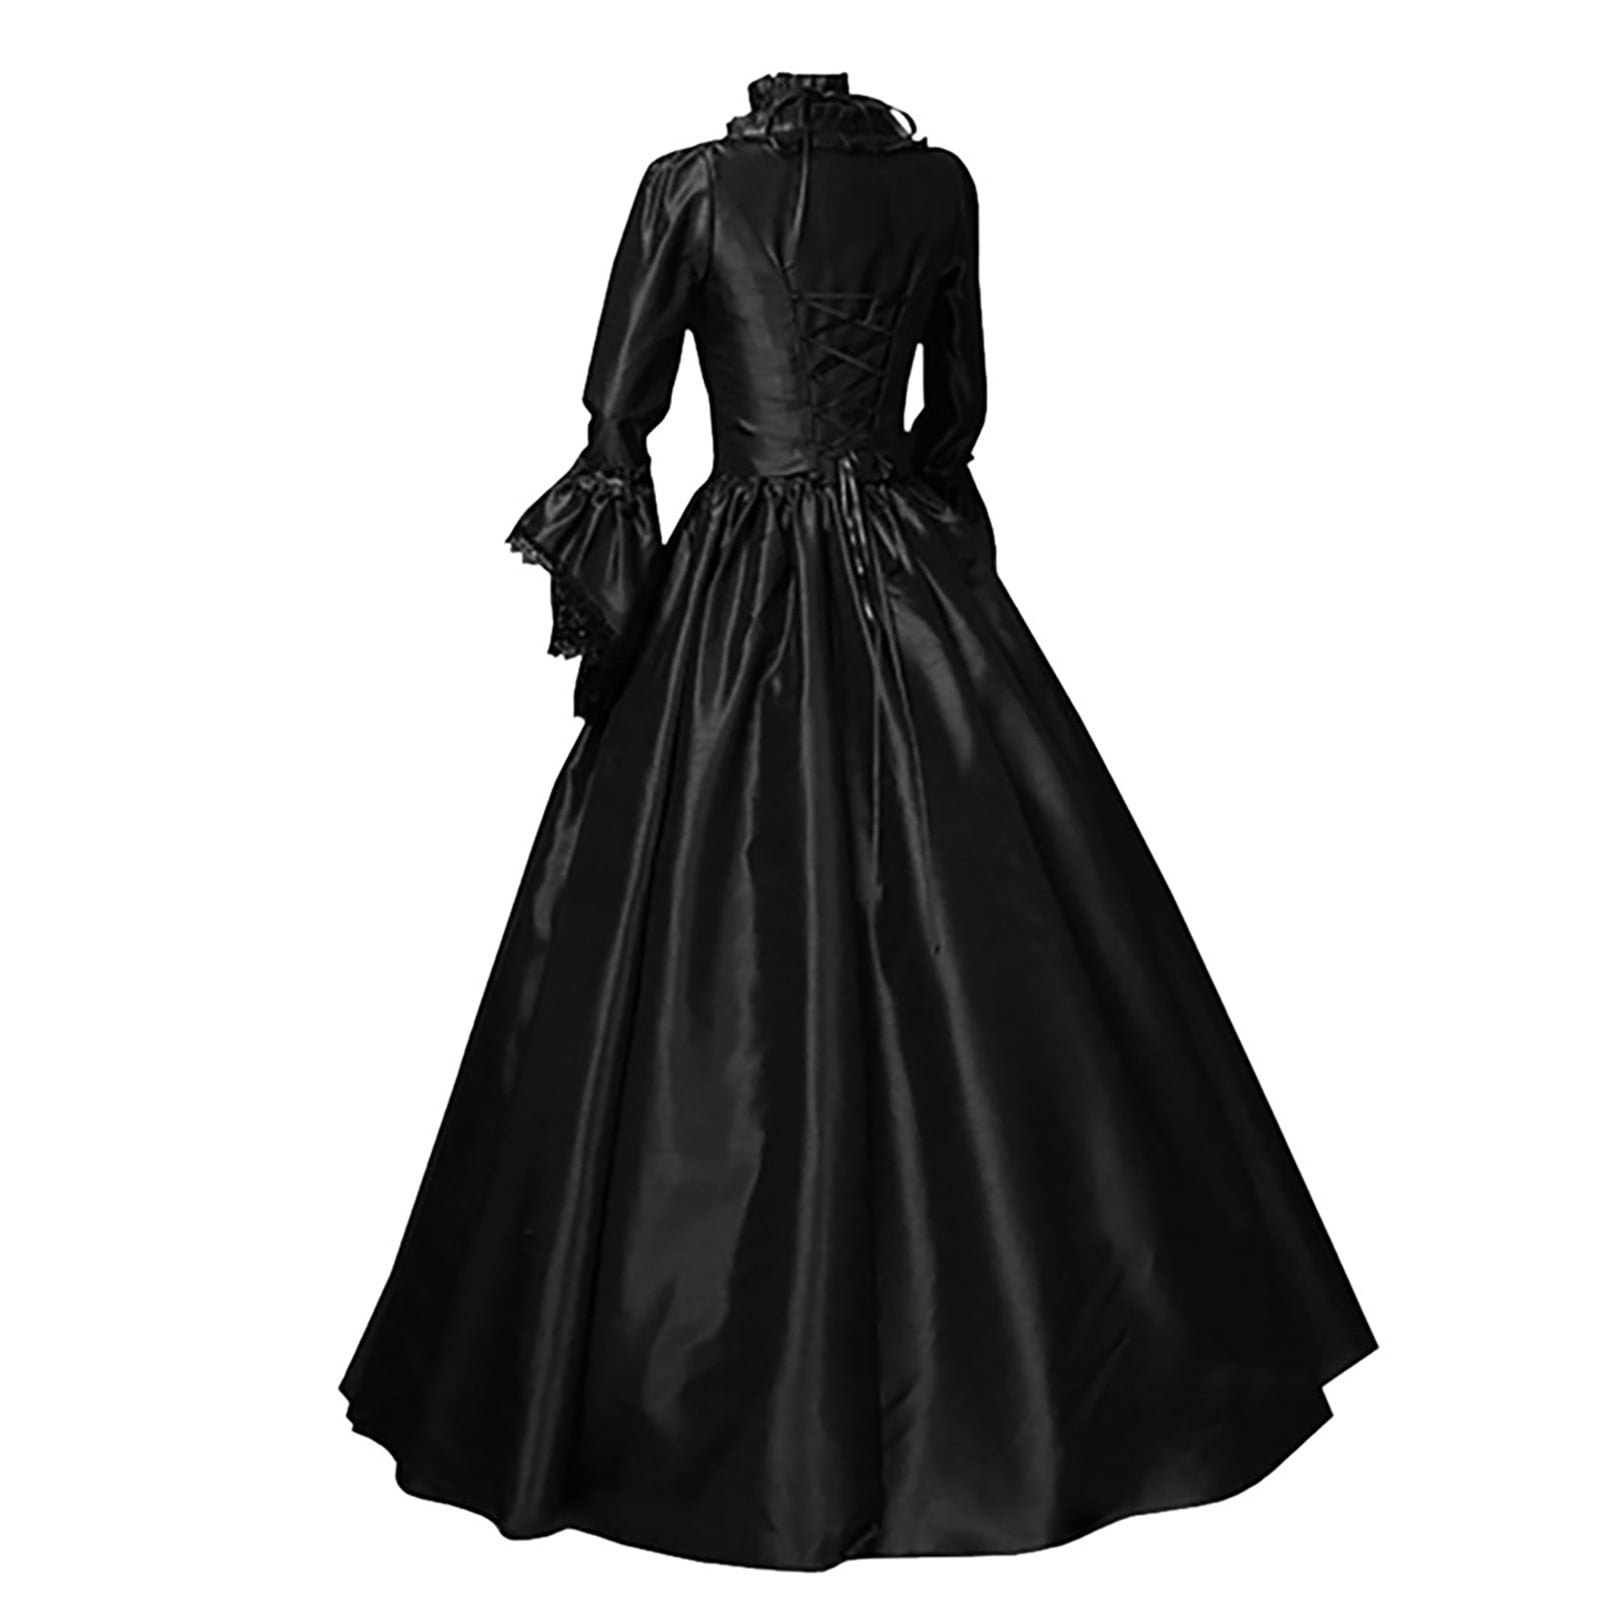 Affordable Mint Green Quinceanera Dress online - Cheap Prom Dress,Evening  Dress & Wedding Dress online|Isueer